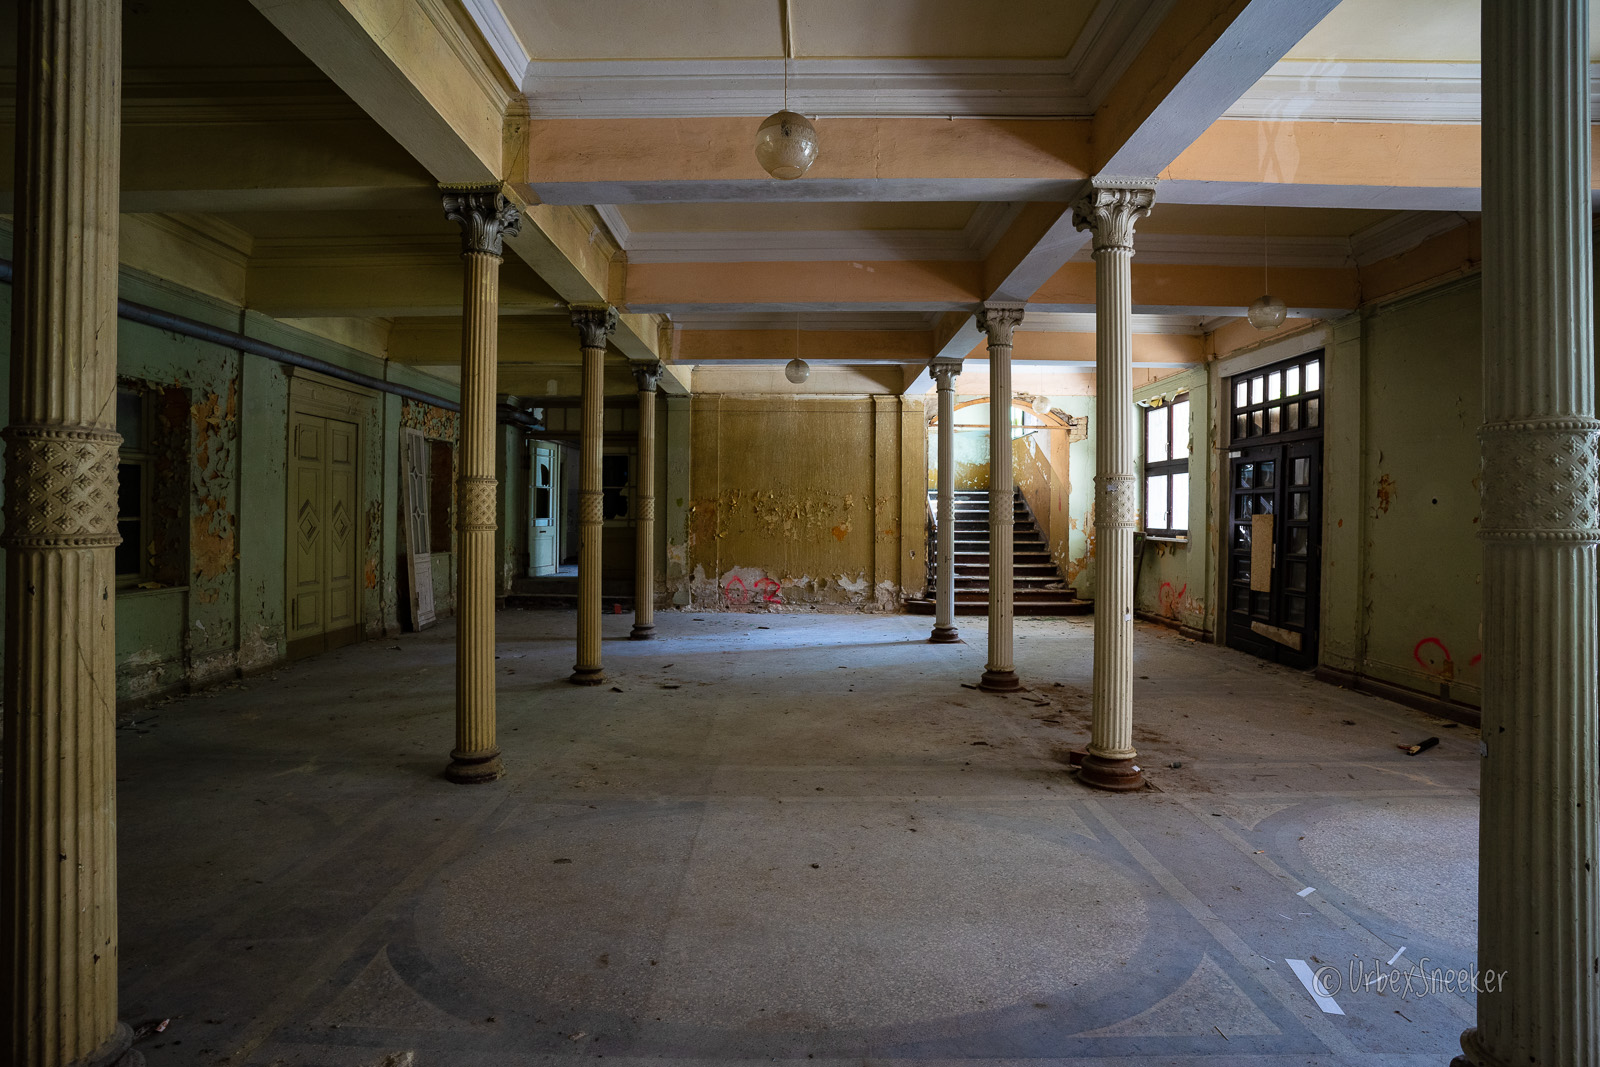 veingangshalle mit säulen eines verlassenen hotel im harz